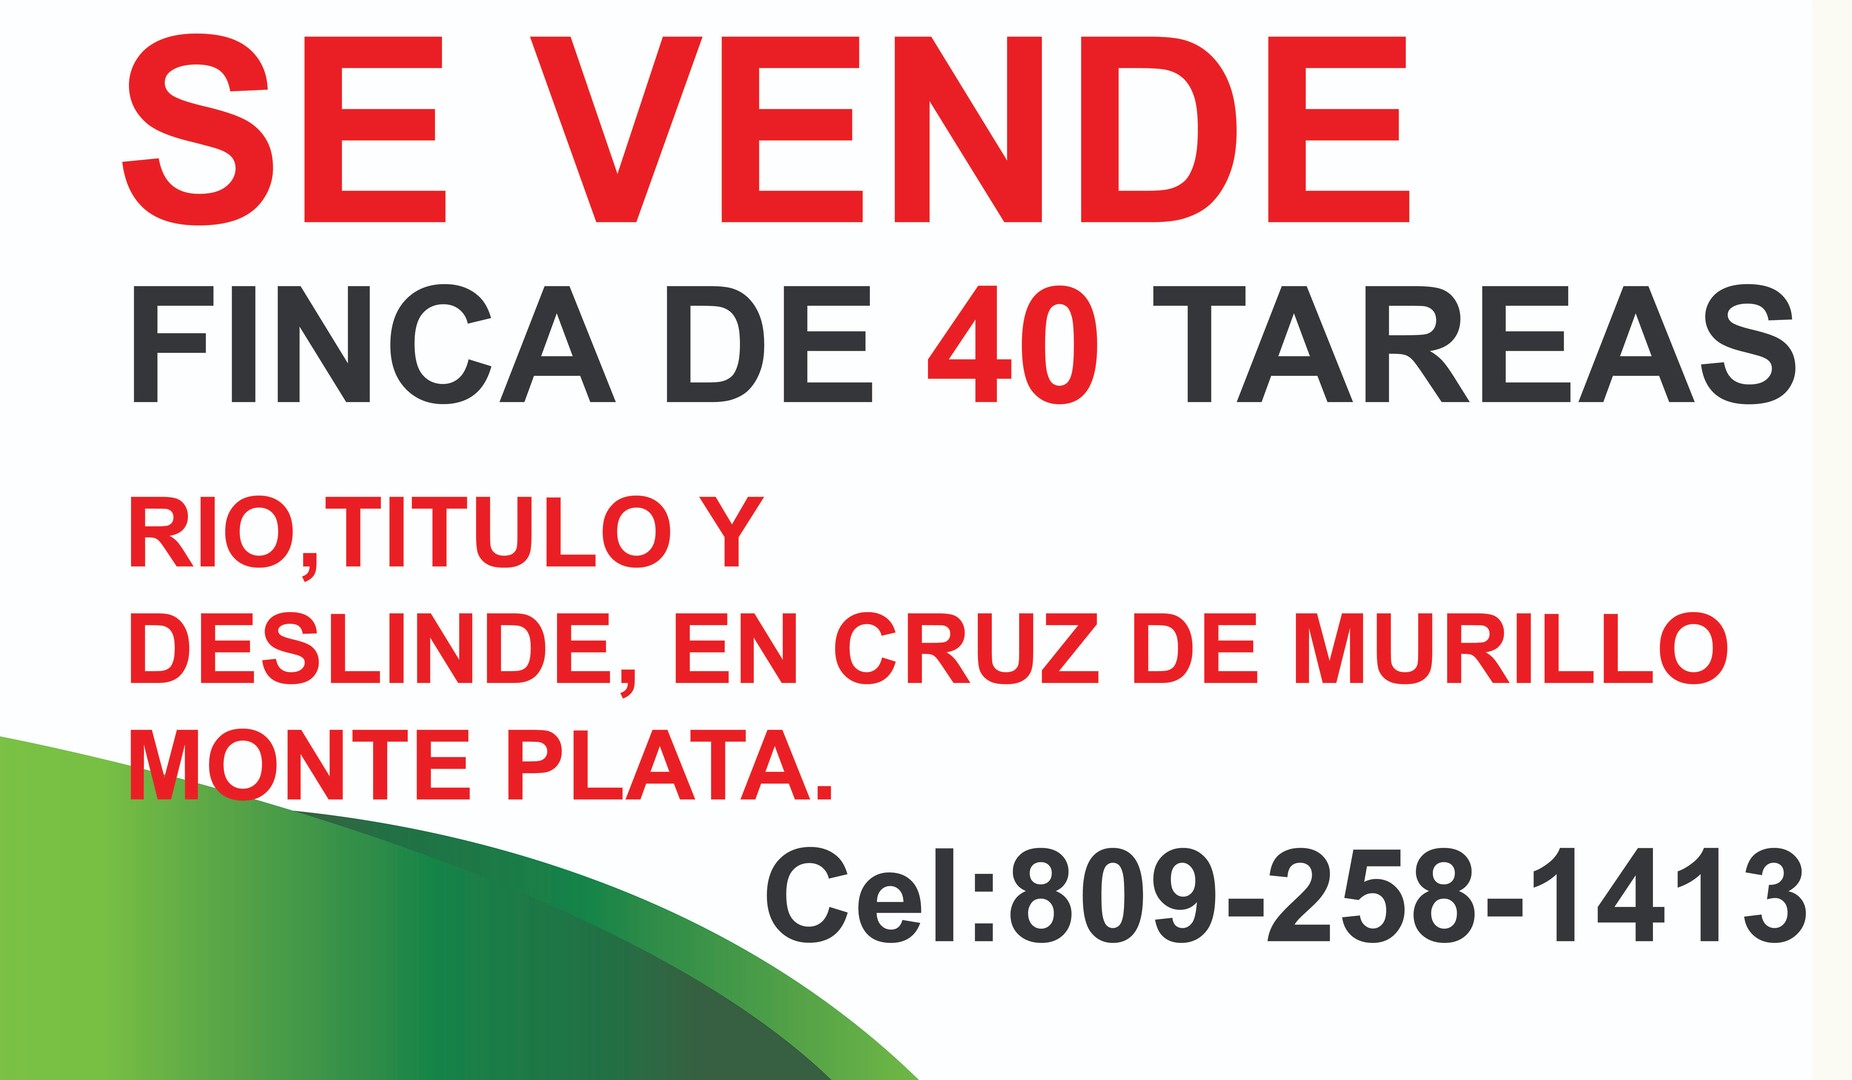 solares y terrenos - Vendo Finca de 40 tareas en Cruz de Murillo. Monte plata.